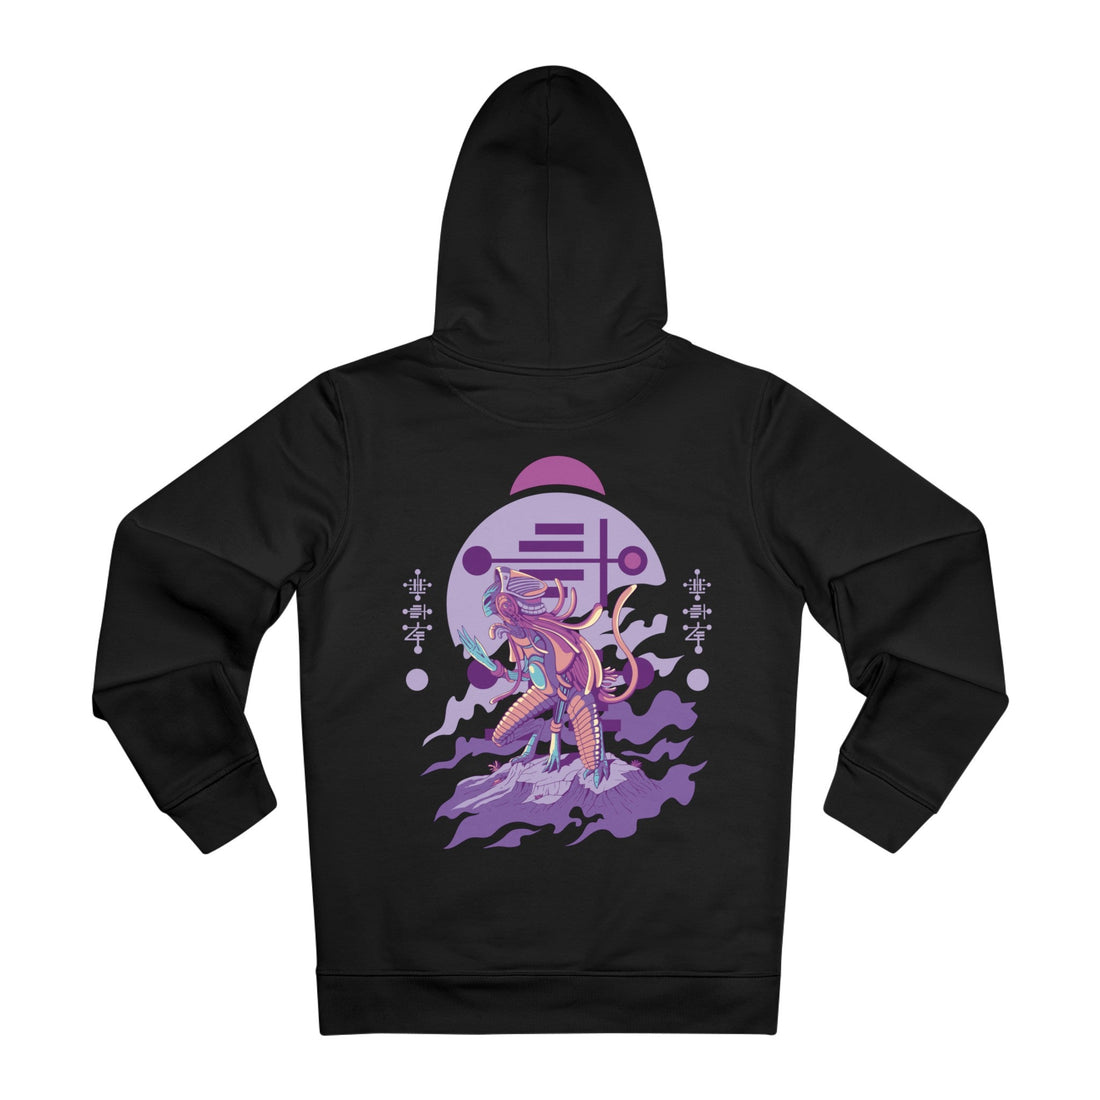 Printify Hoodie Black / M Alien Creature kneeling - Alien Warrior - Hoodie - Back Design